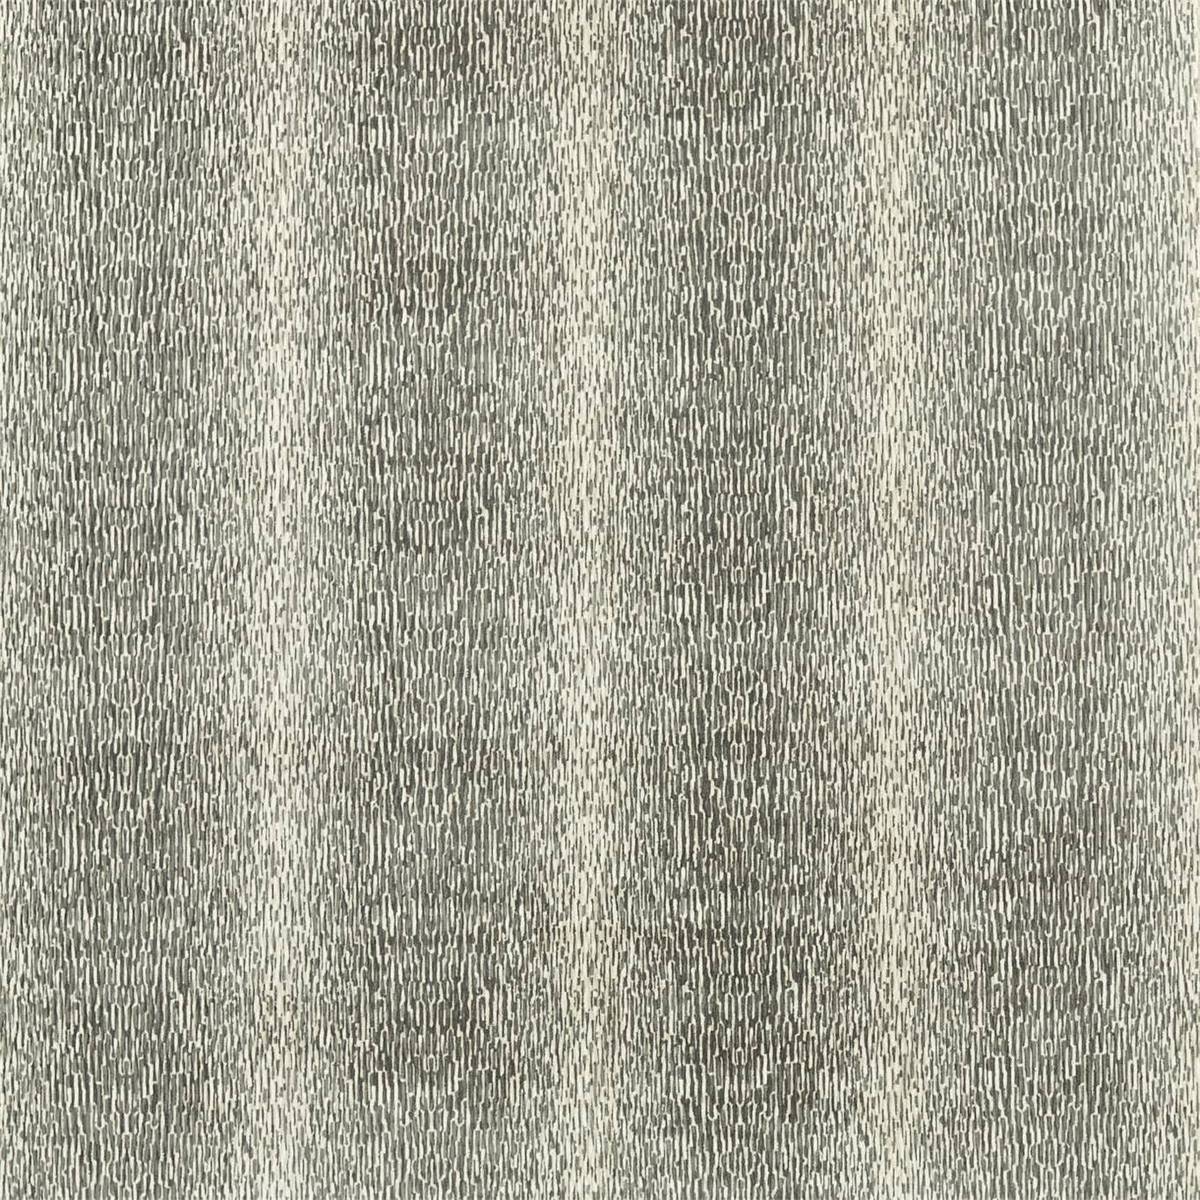 Niello Graphite Fabric by Harlequin